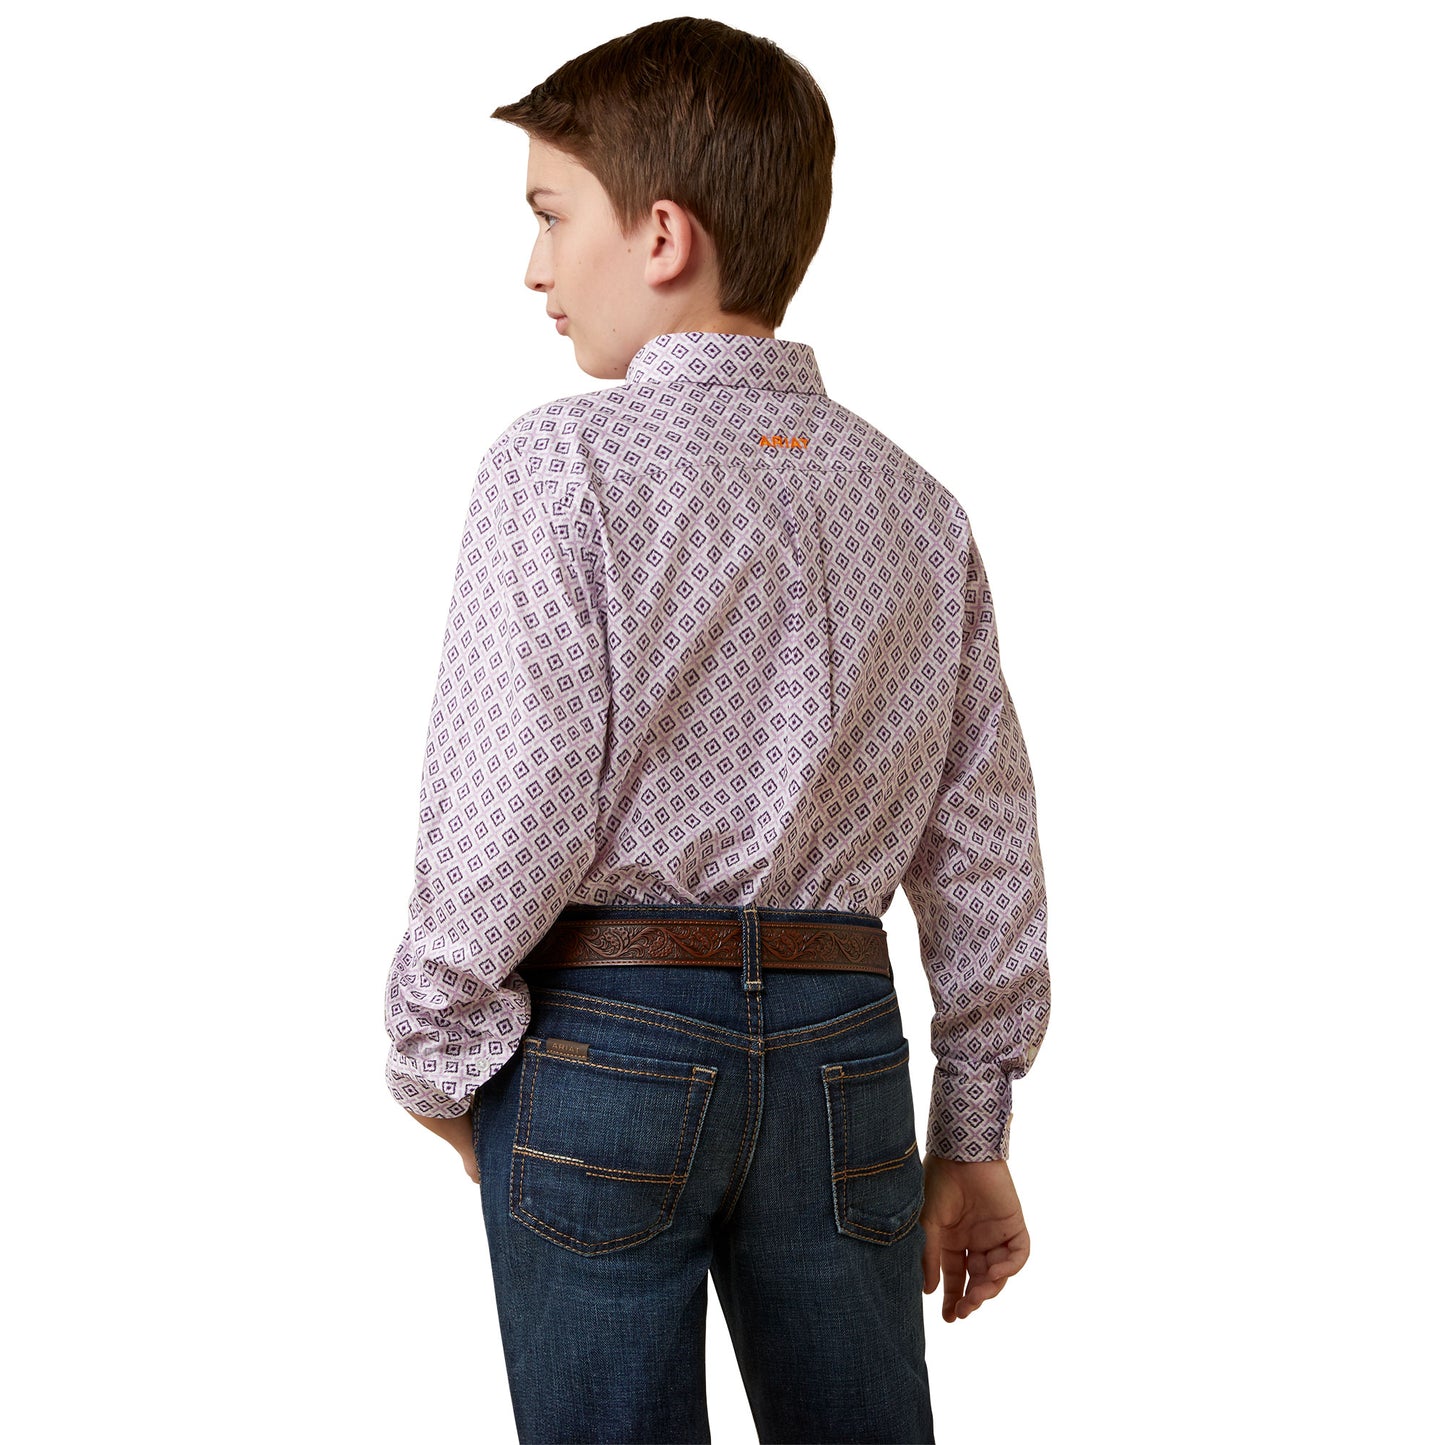 Ariat Kids' Button up Shirt